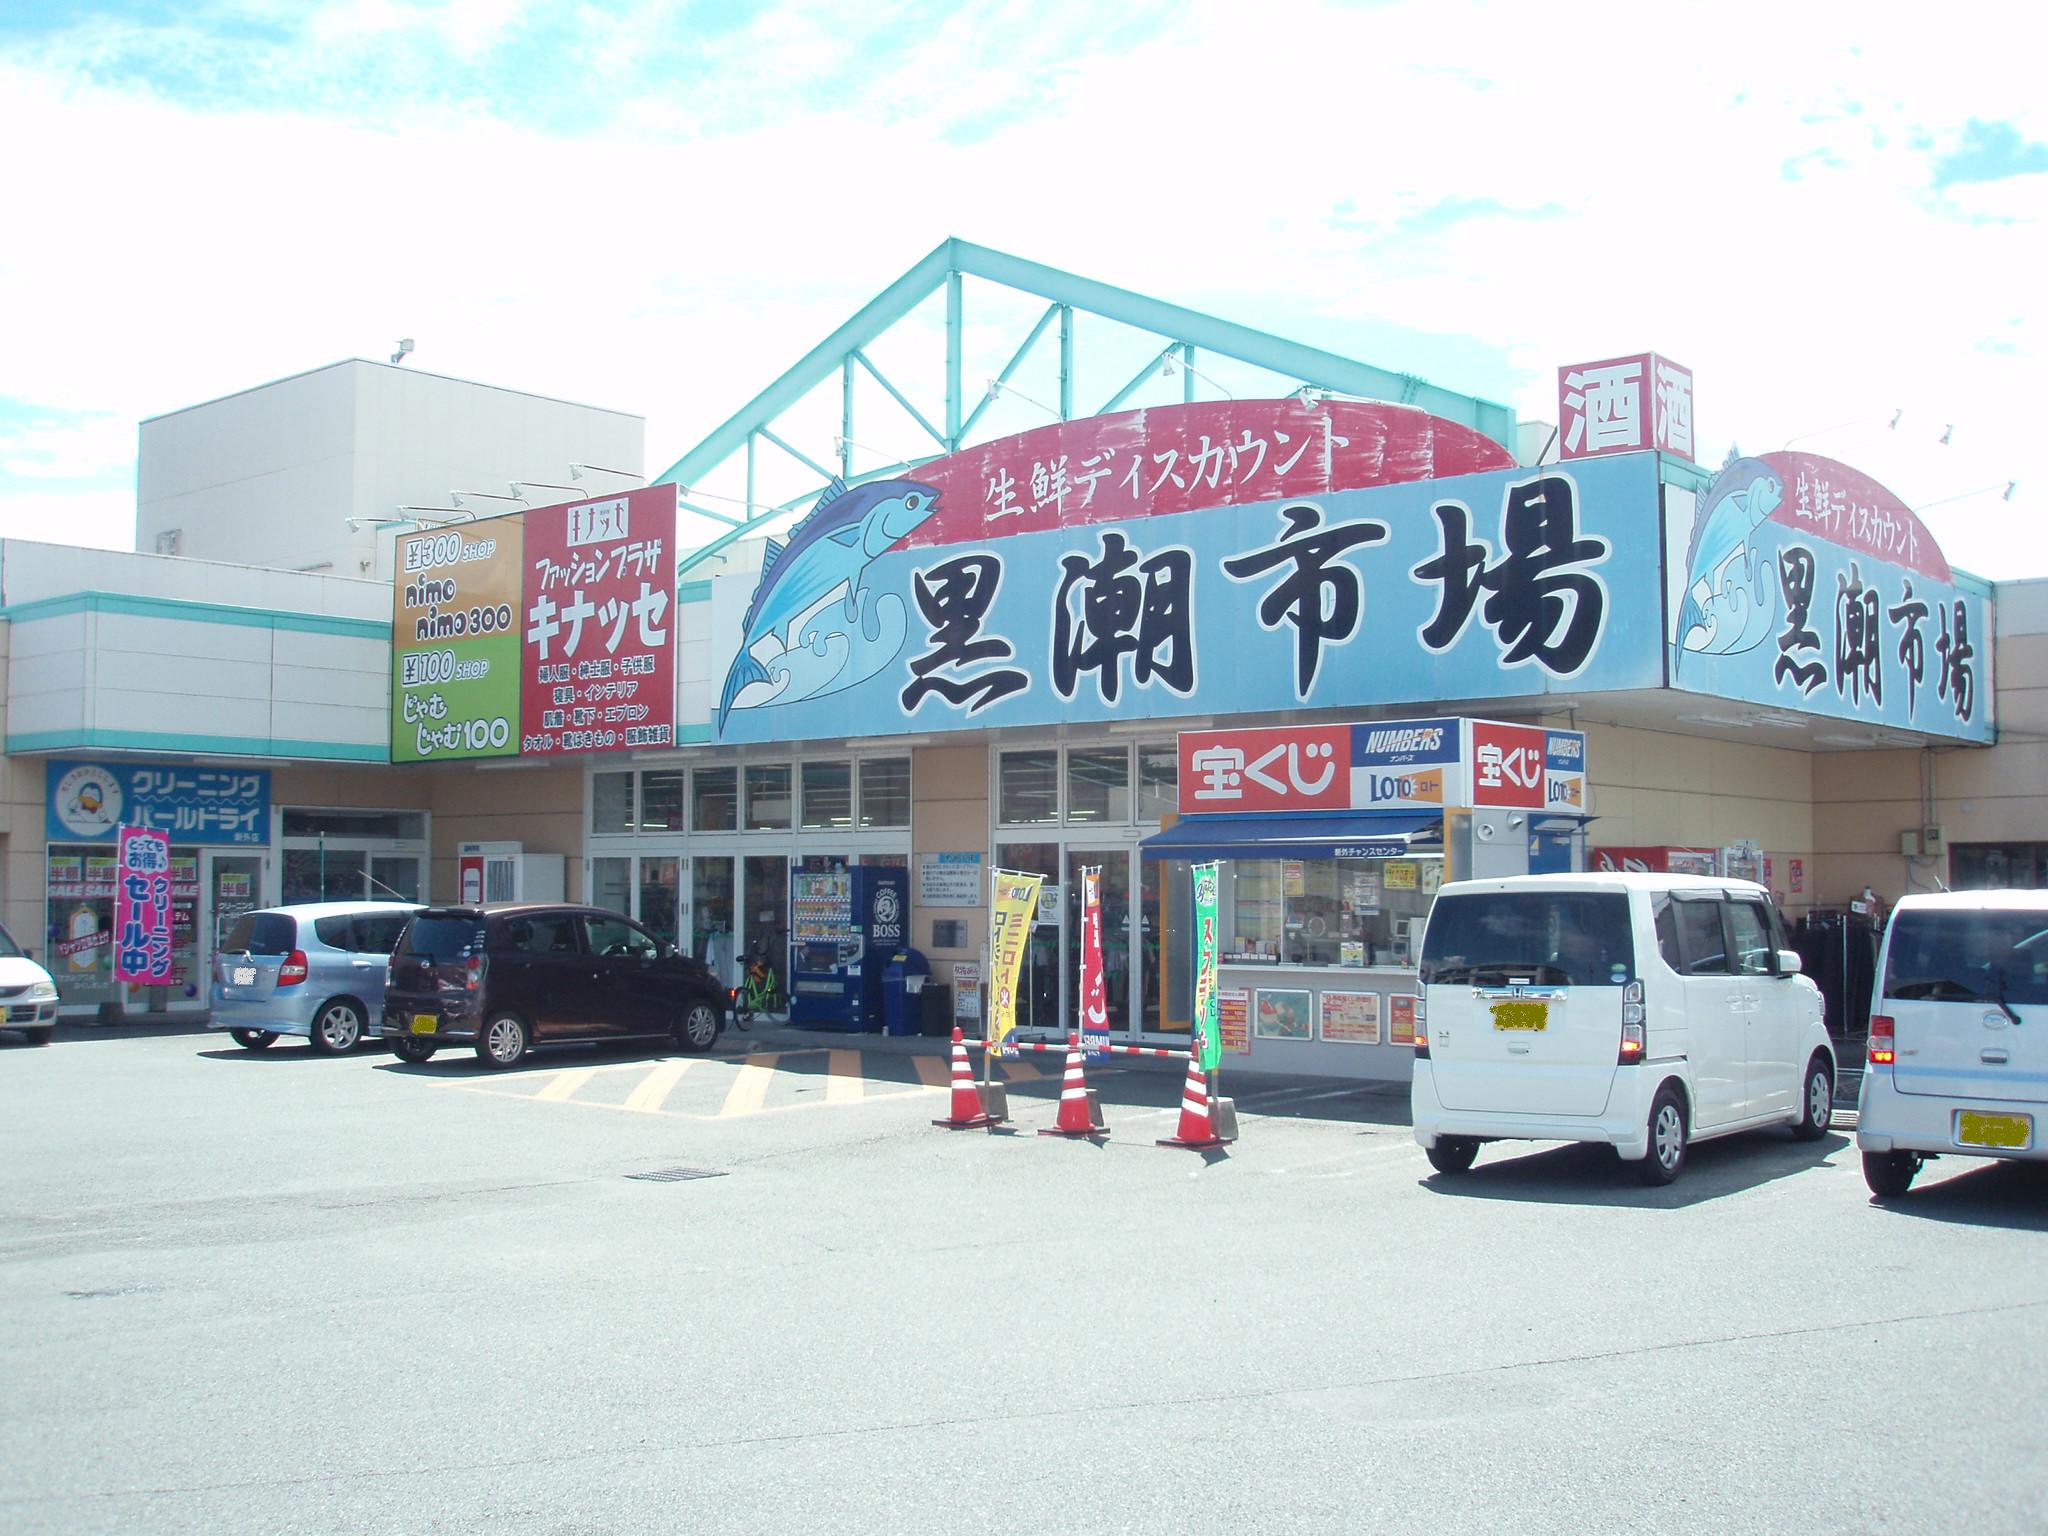 Supermarket. 270m until the Kuroshio market Shinsototen (super)